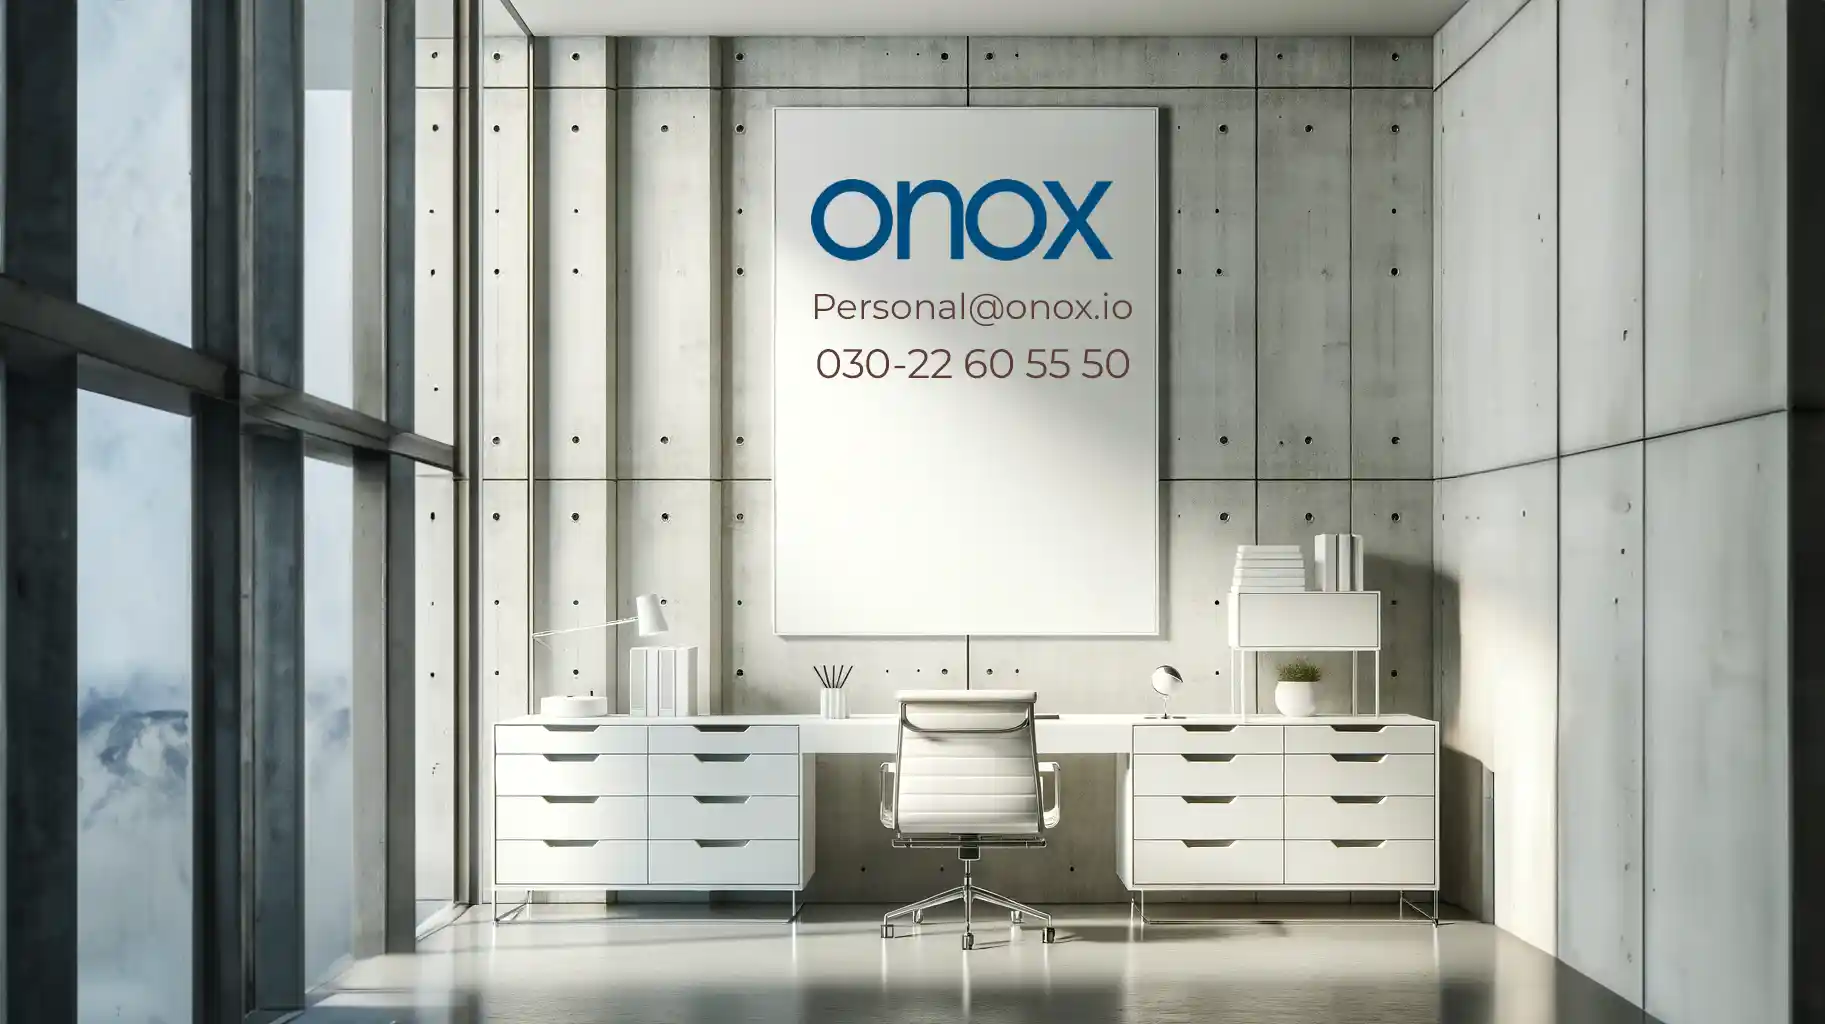 Modernes Büro mit dem Firmenlogo von ONOX GmbH und Kontaktinformationen an der Wand